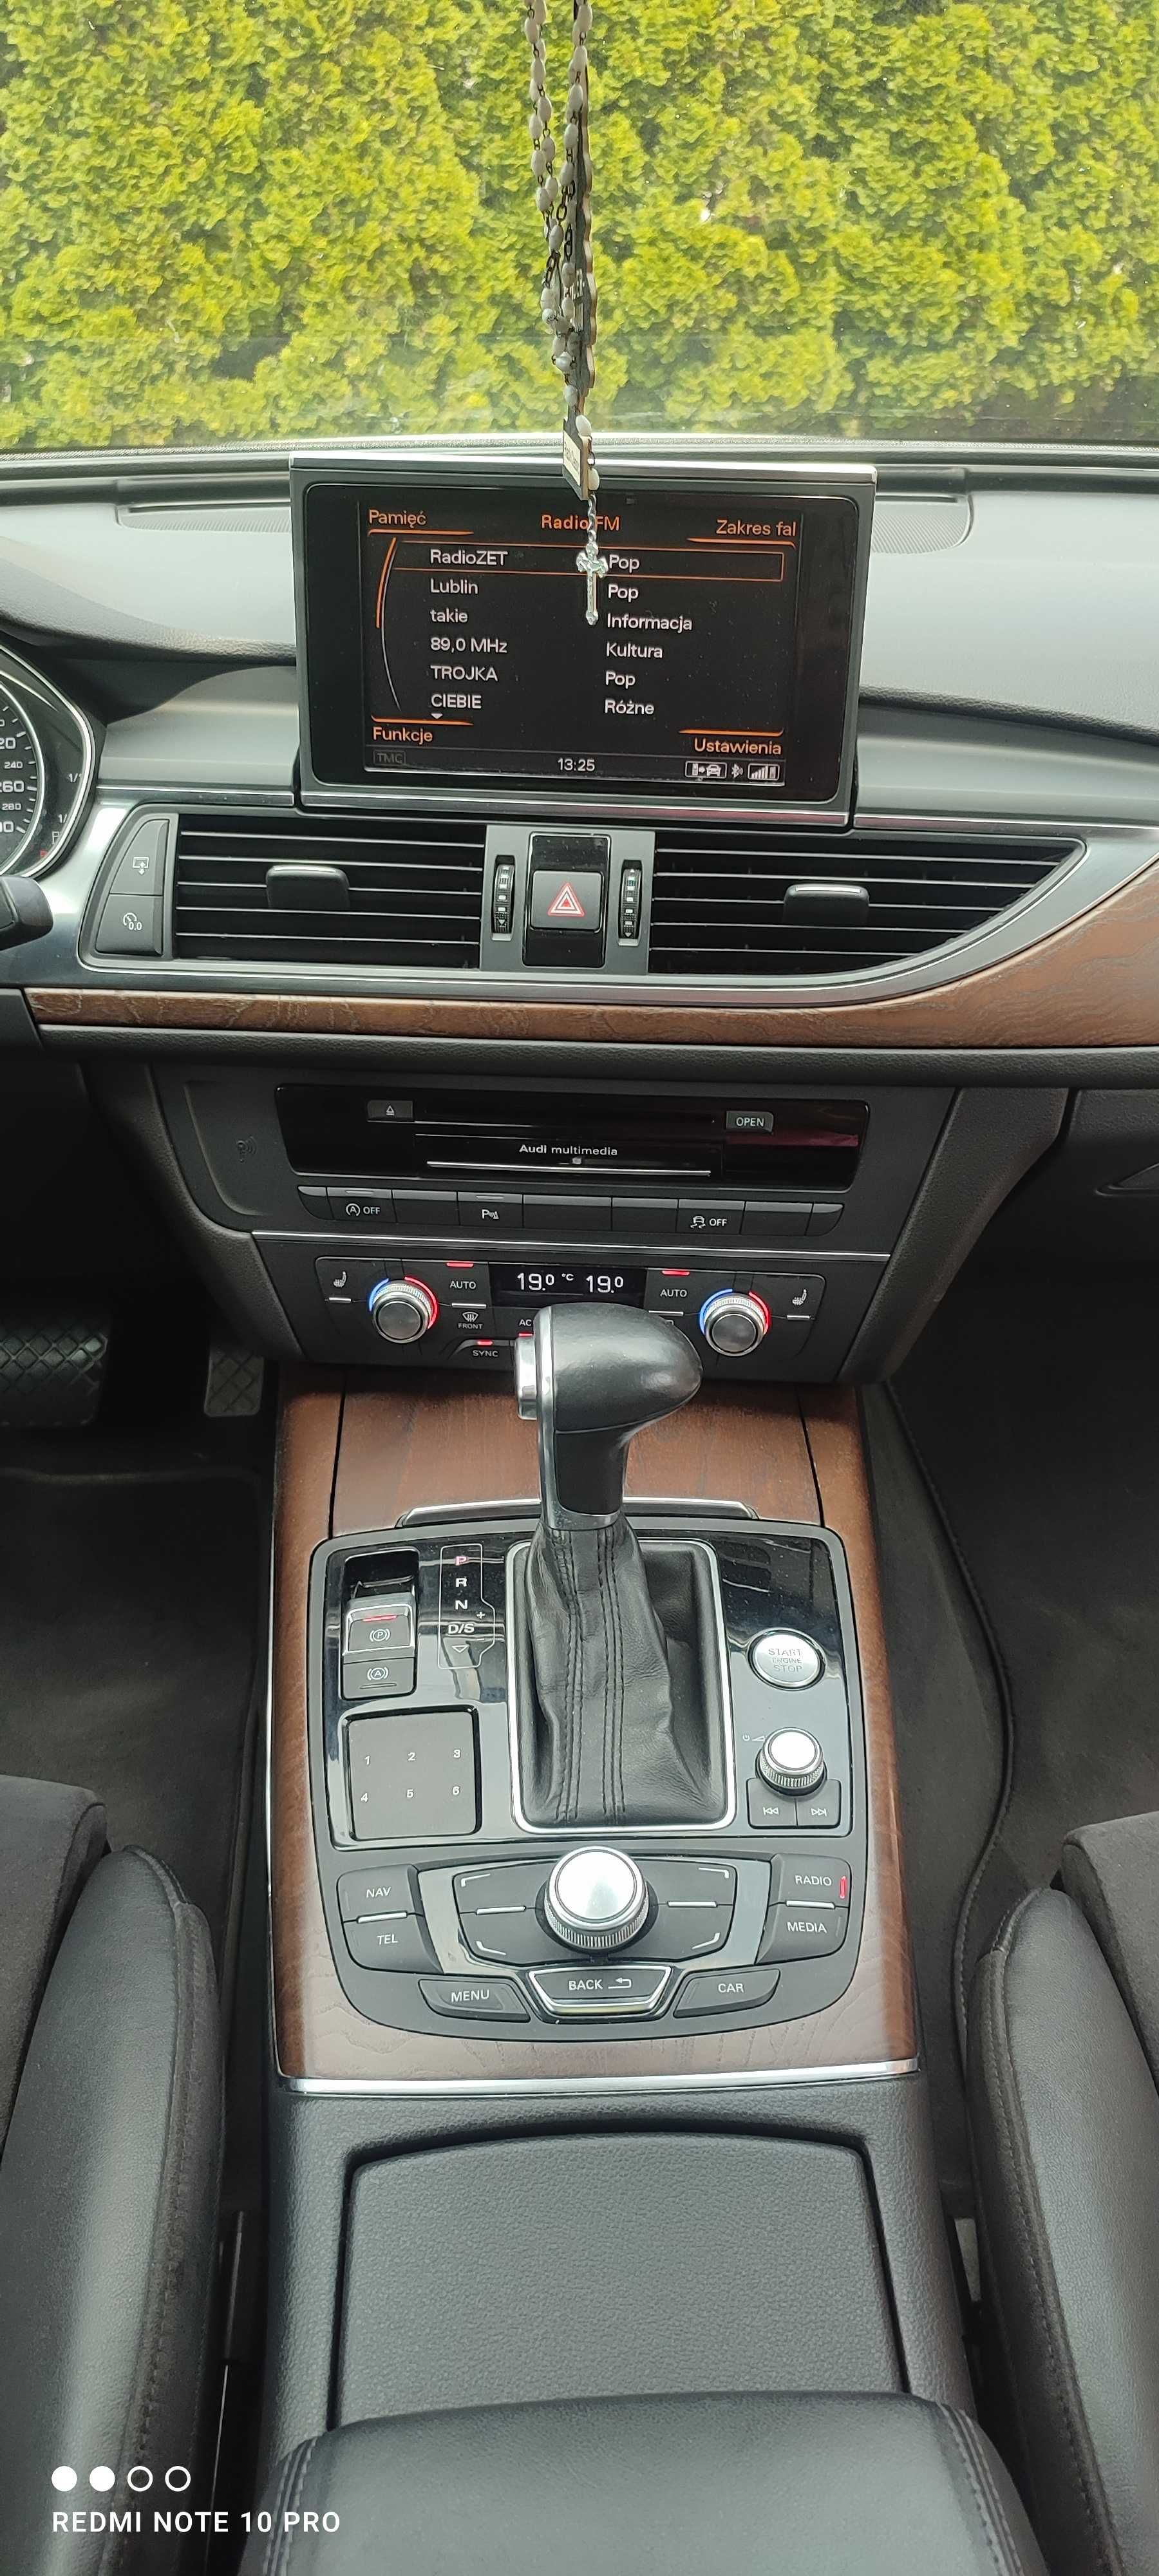 Audi A6 C7 , 2,0 TDI, Combi 2013 rok